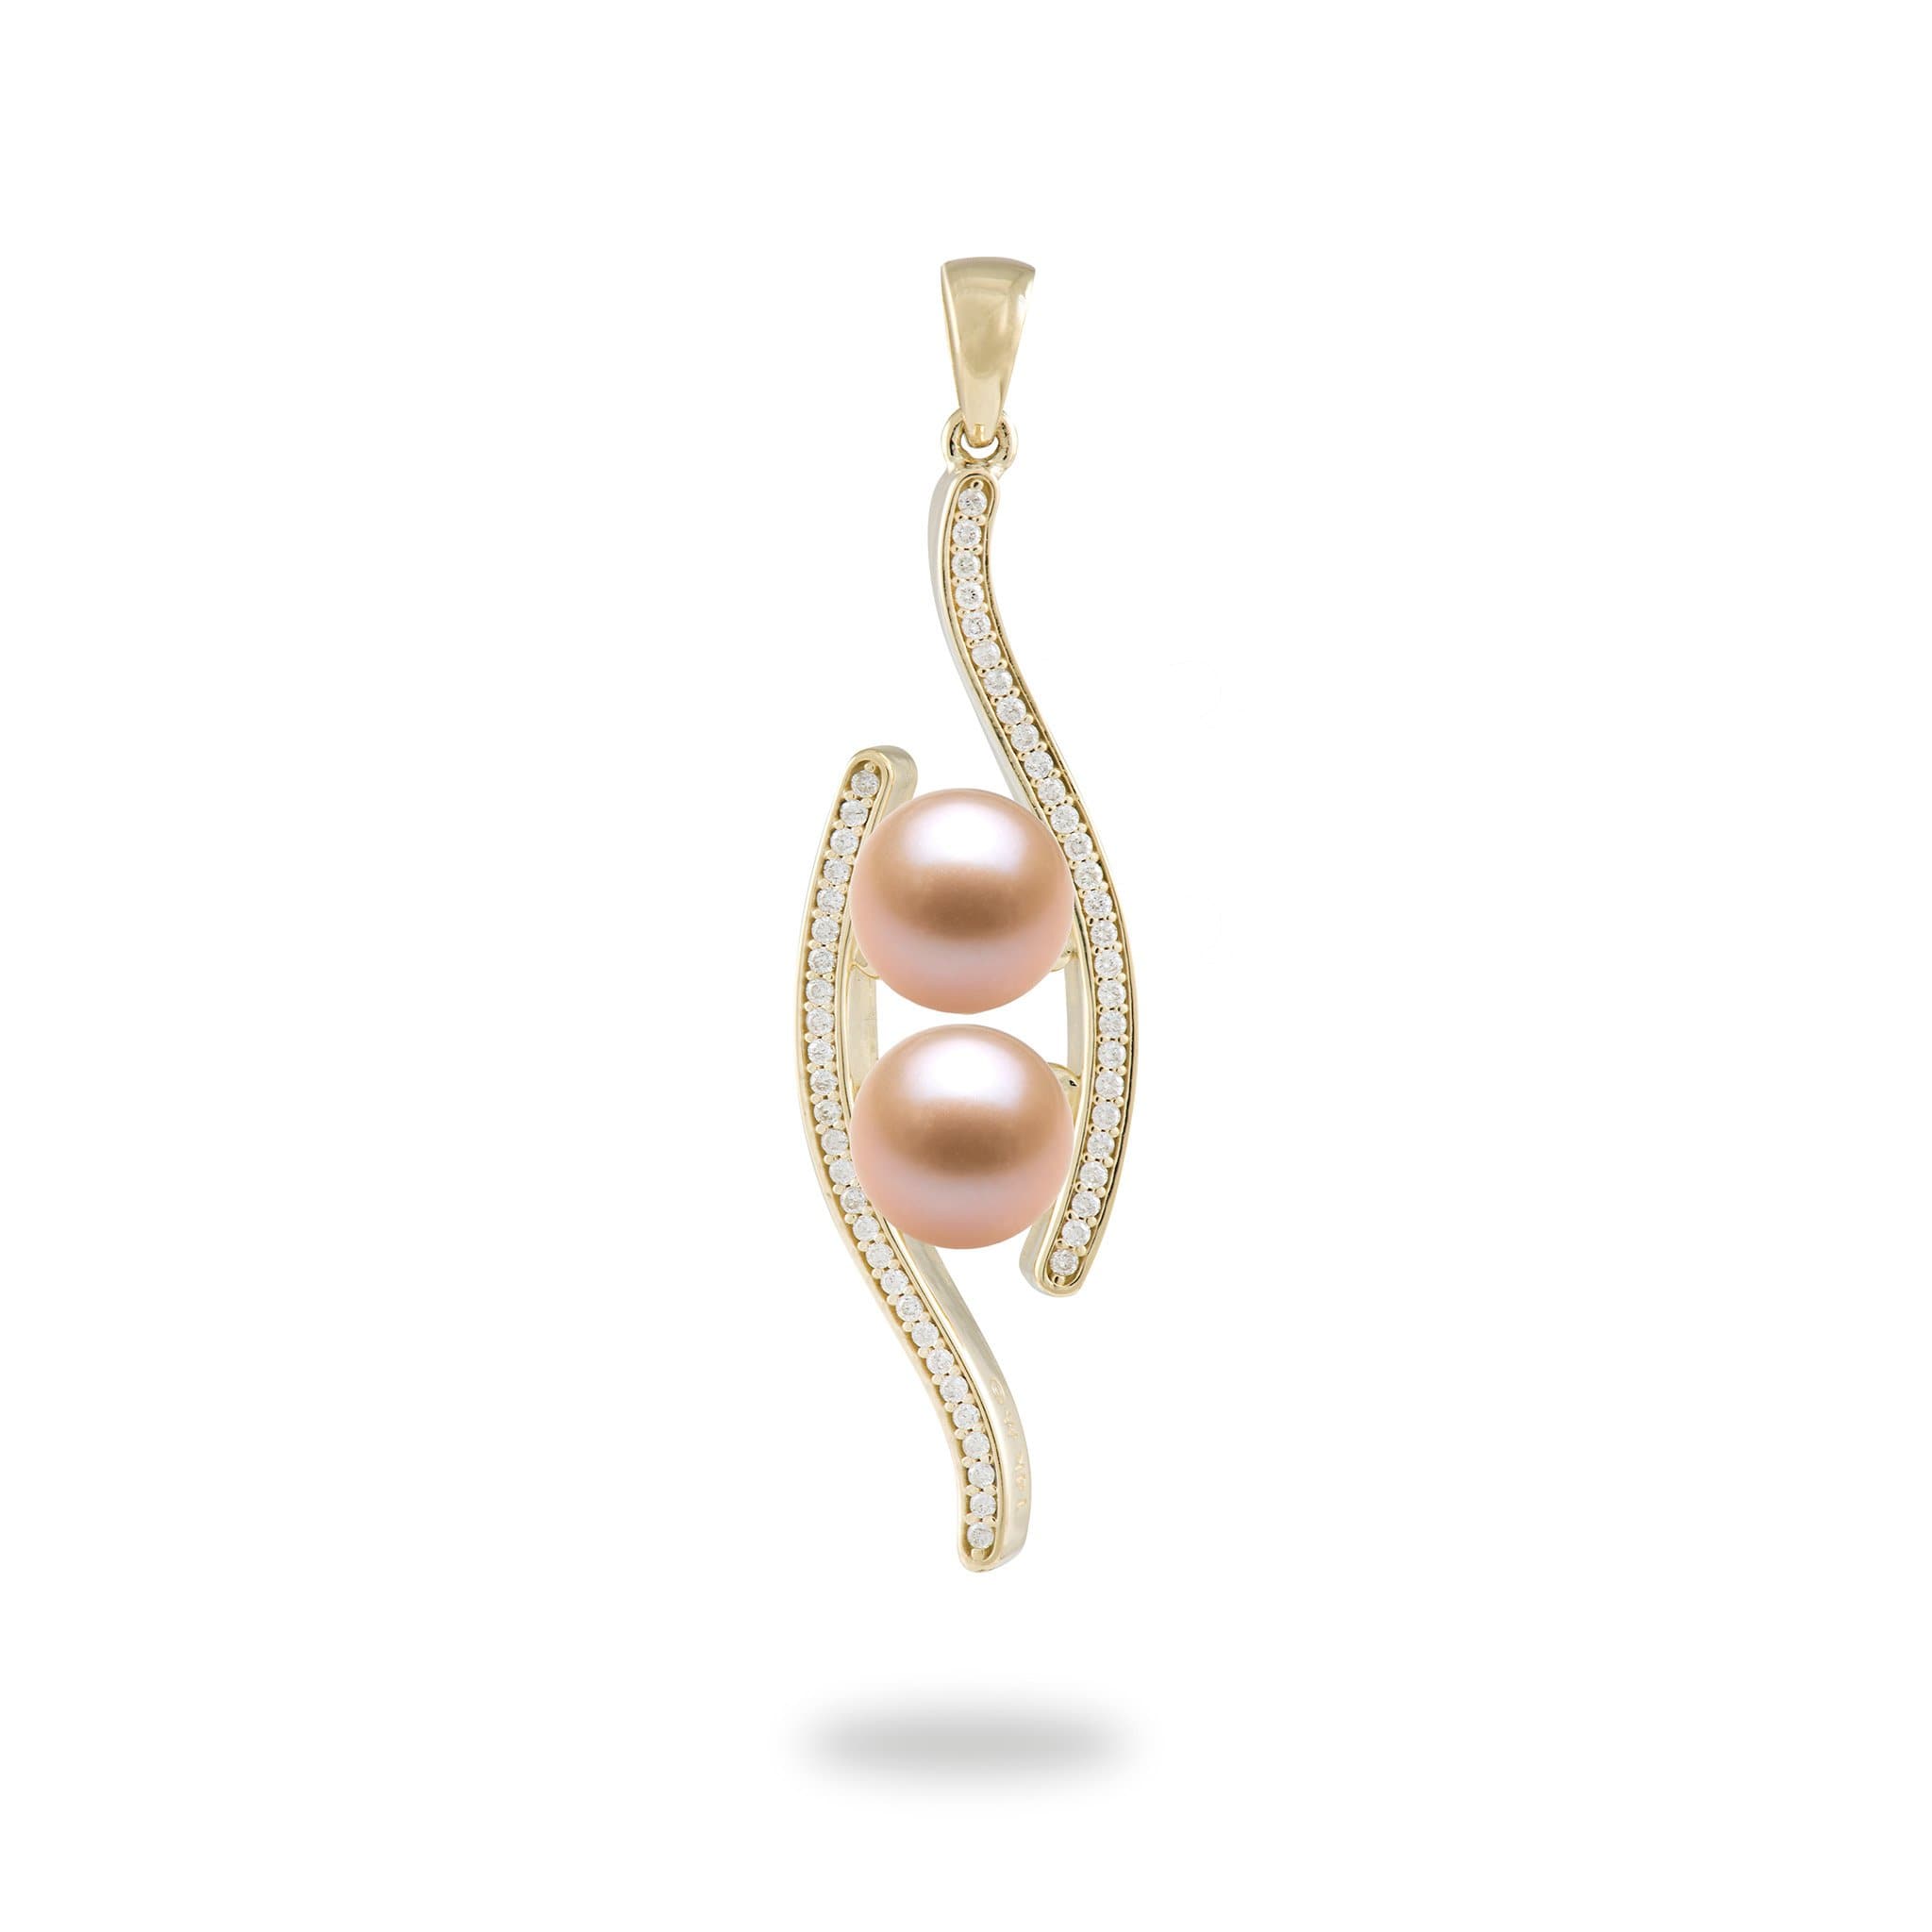 Choisissez un pendentif perlé en or